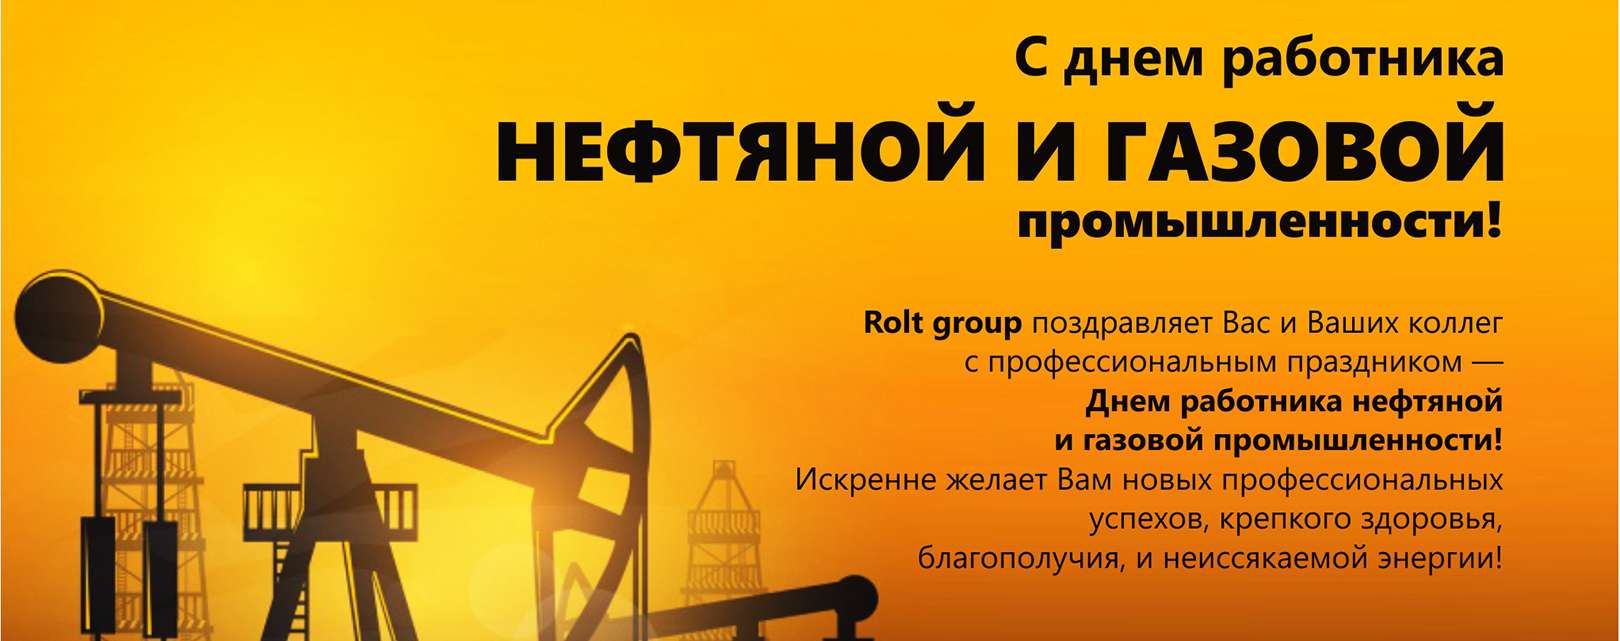 Открытки день работников нефтяной и газовой промышленности